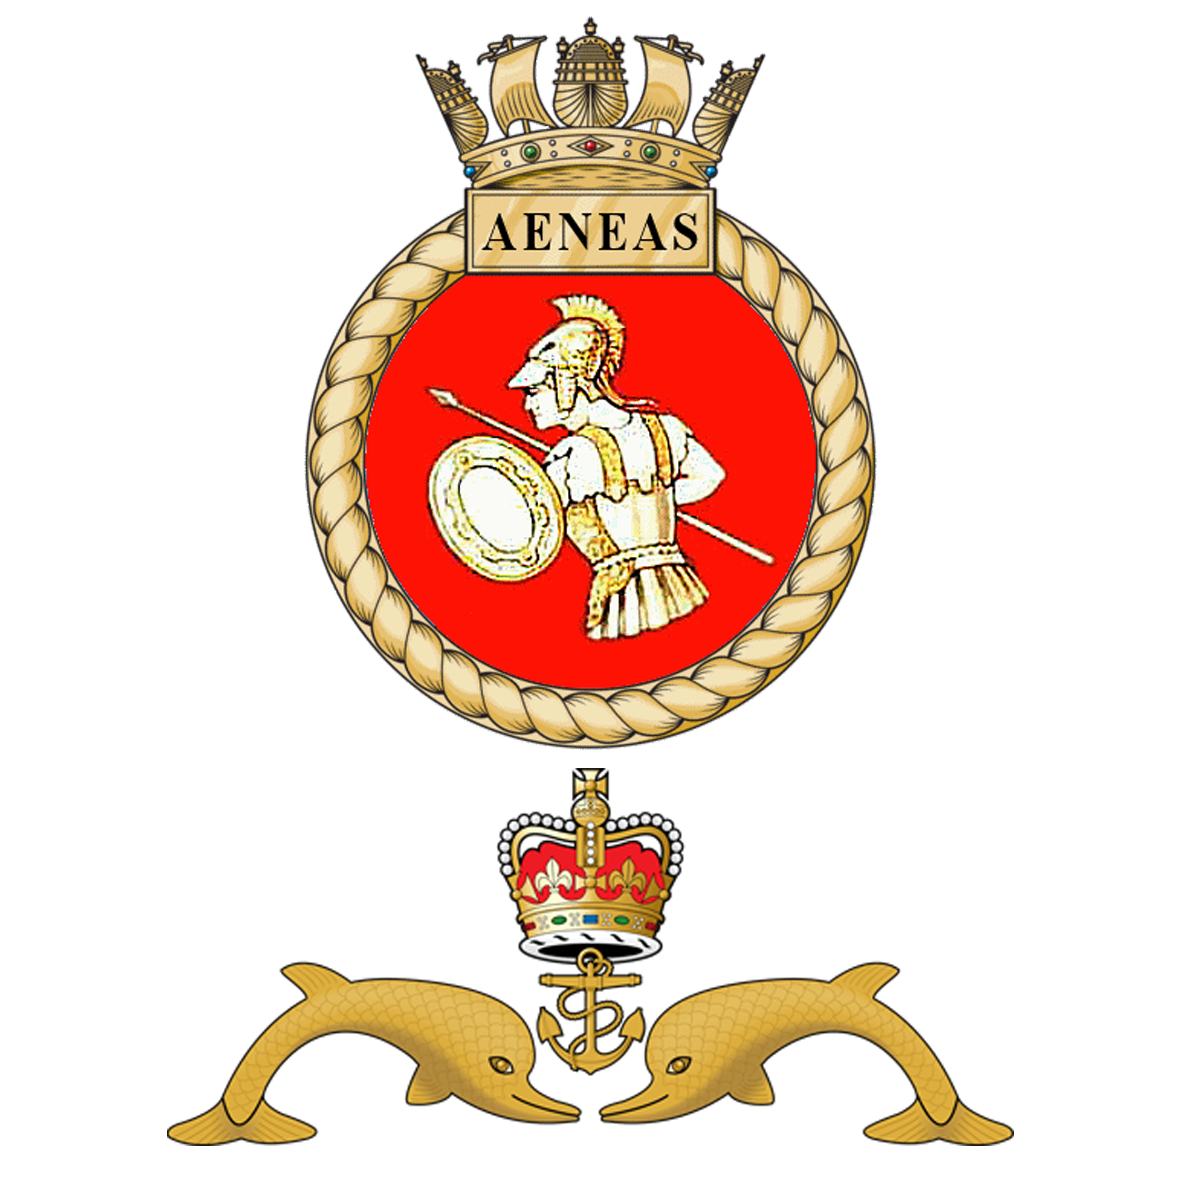 HMS Aeneas